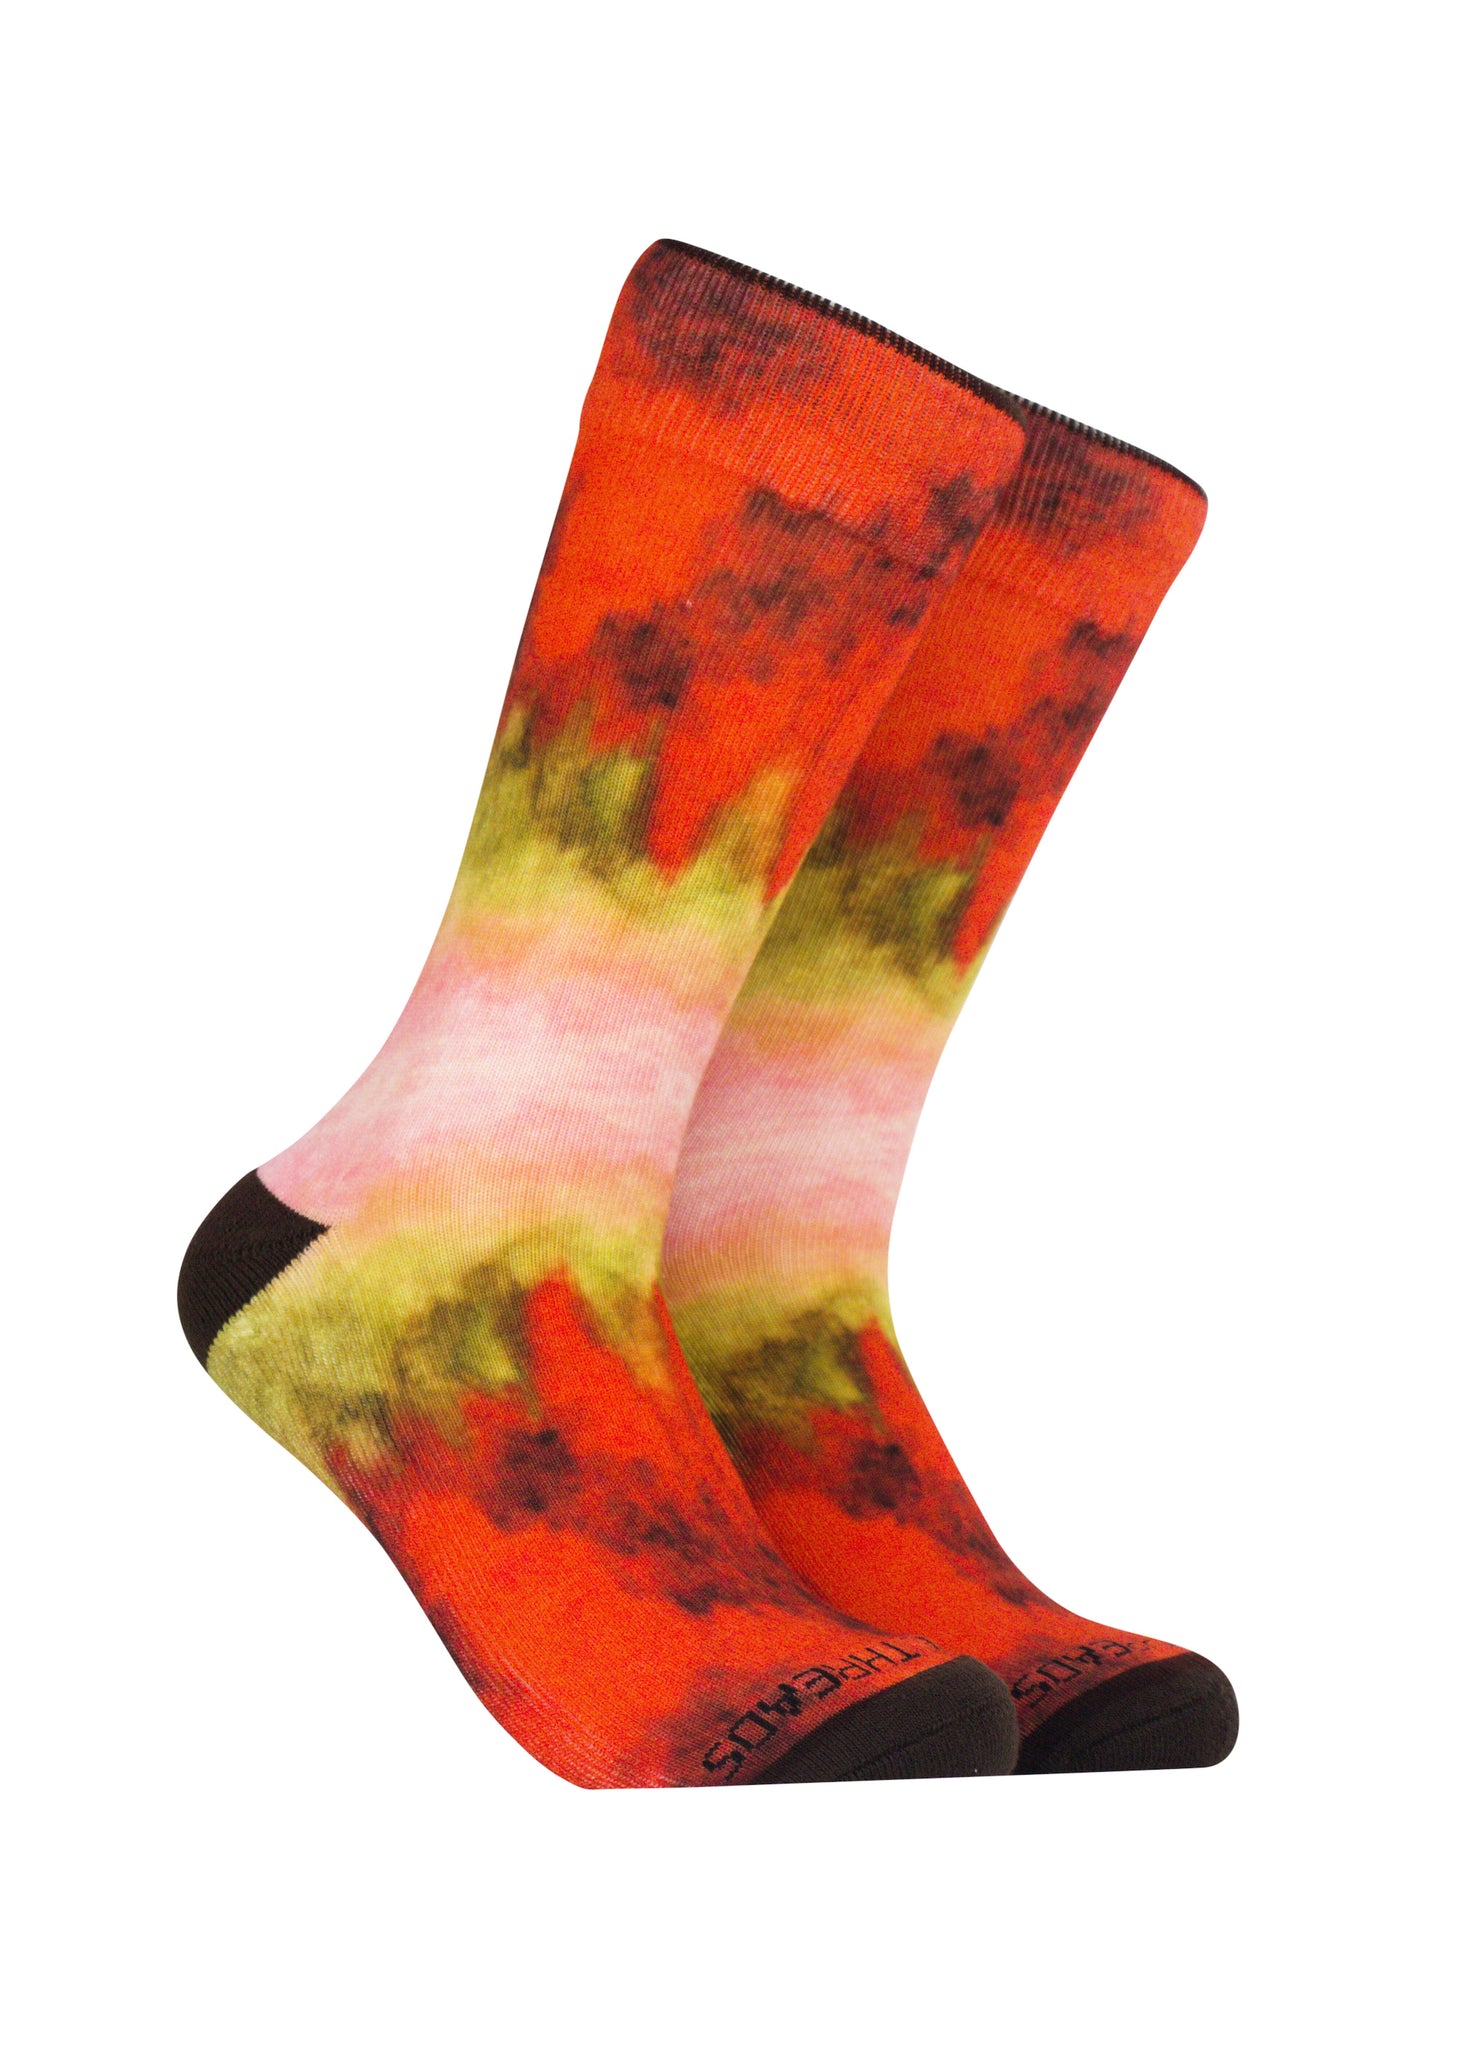 Sockeye Salmon Socks - Novelty Fish Socks- Gifts for Fishermen – Reel  Threads